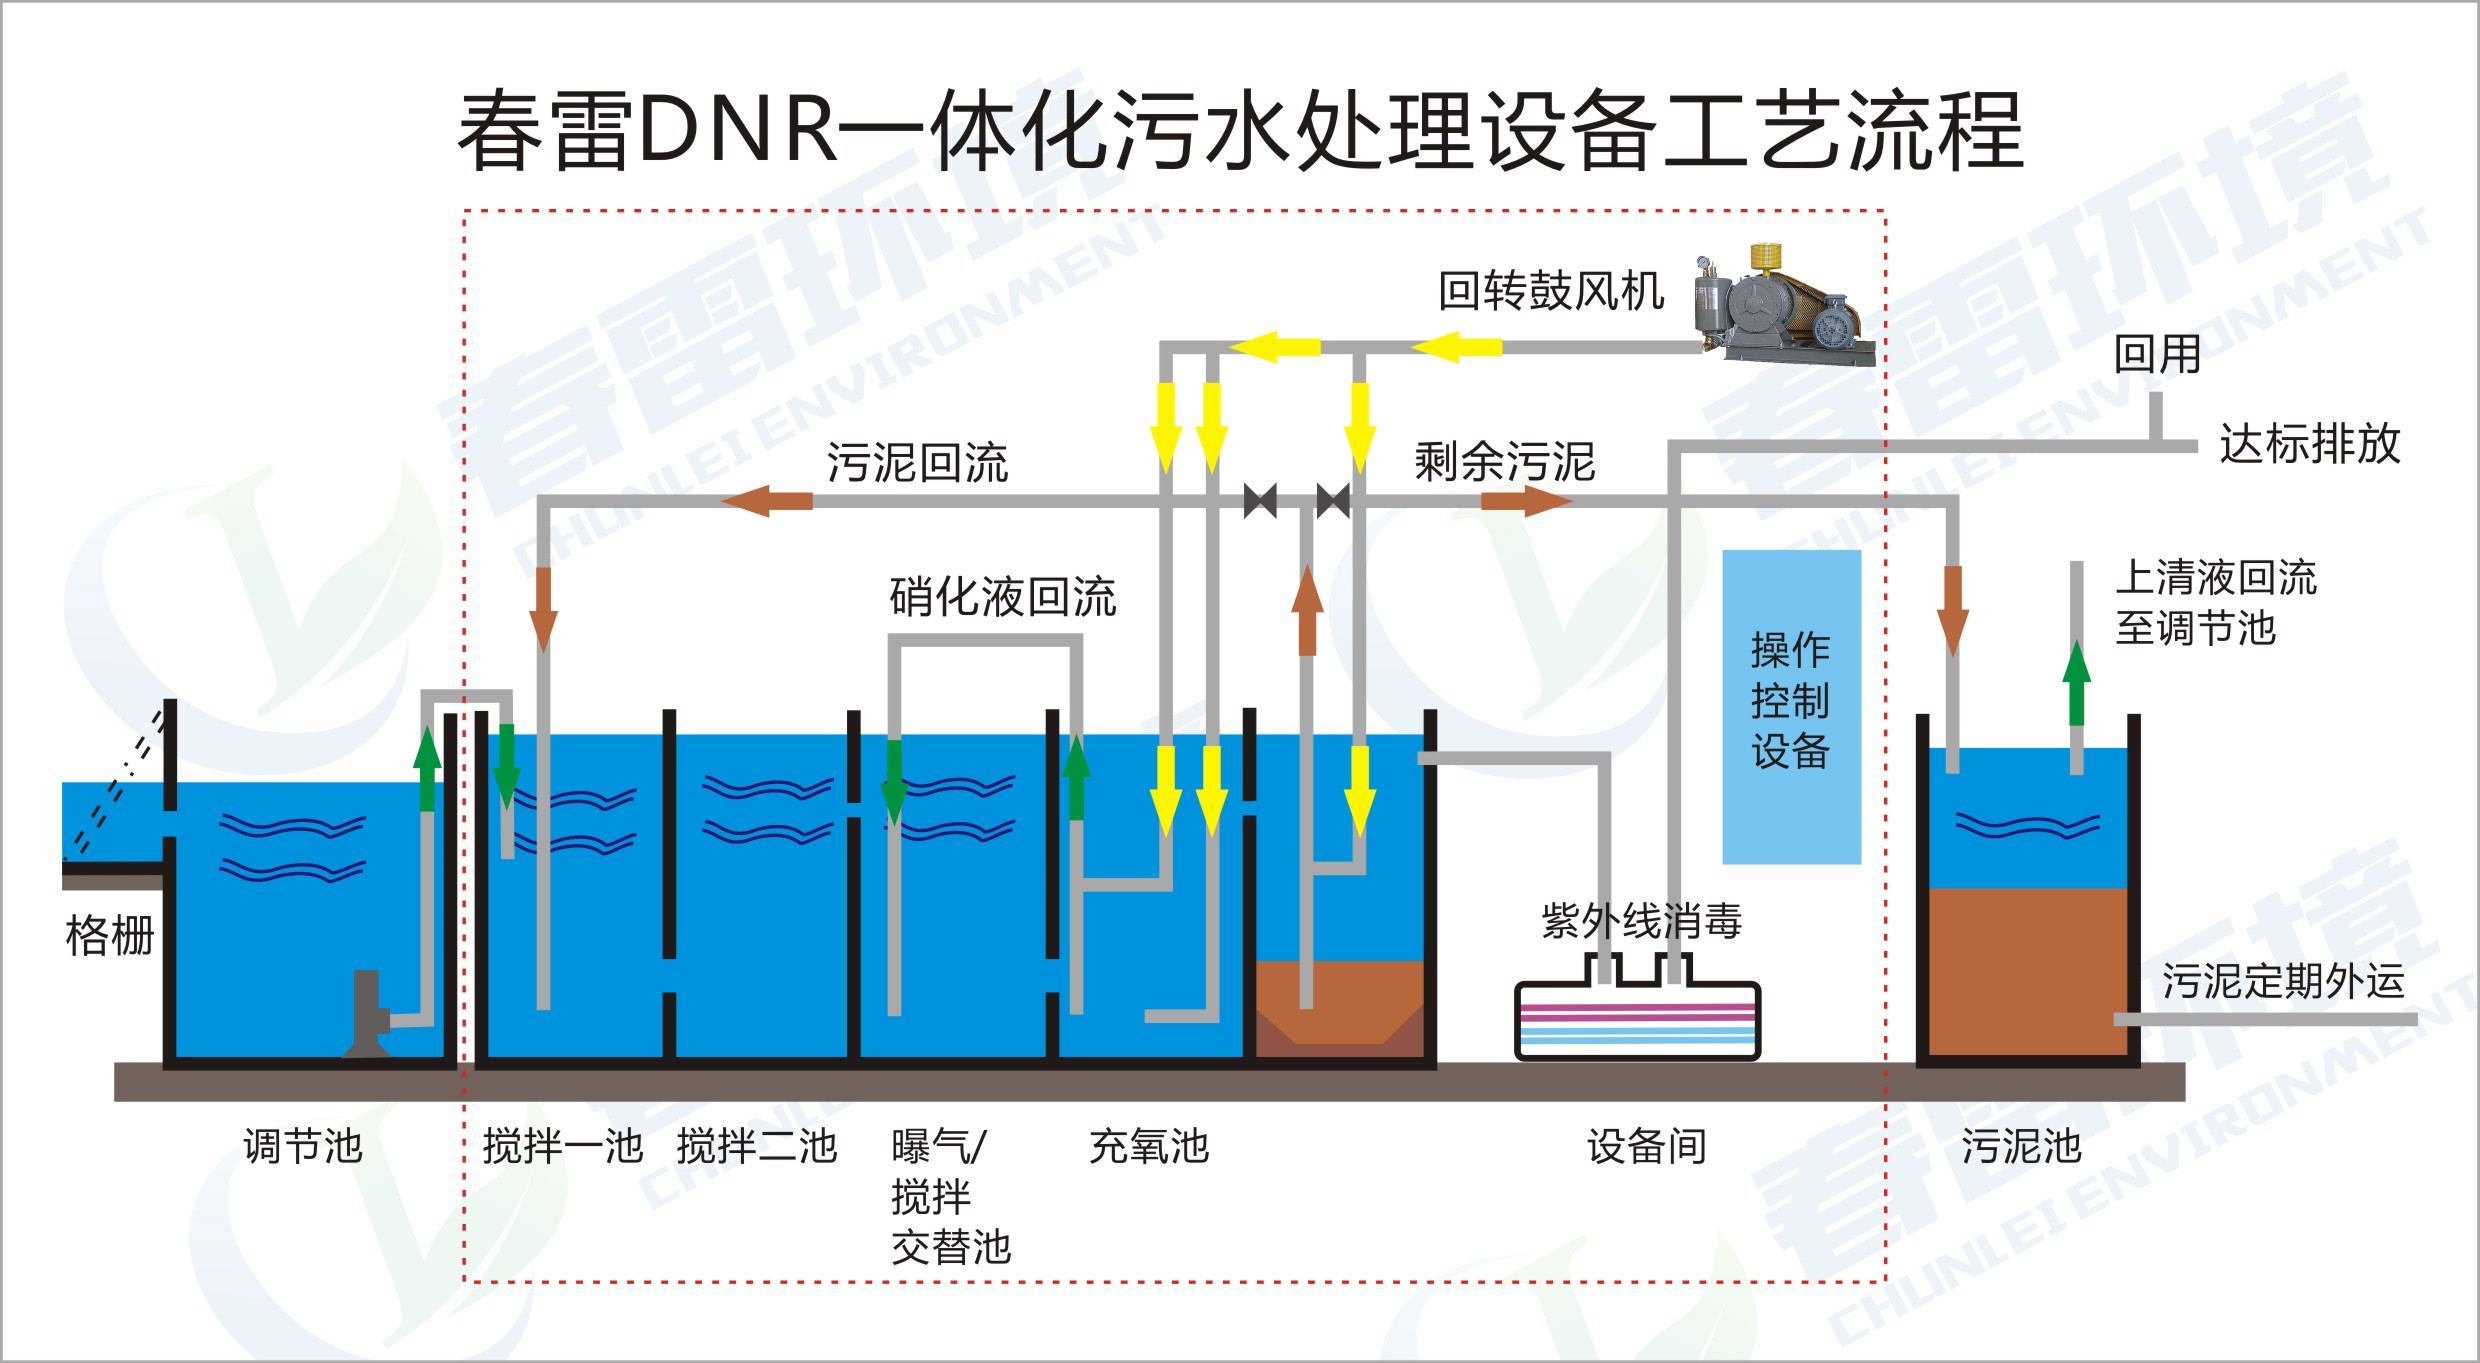 春雷環境DNR農村污水處理技術